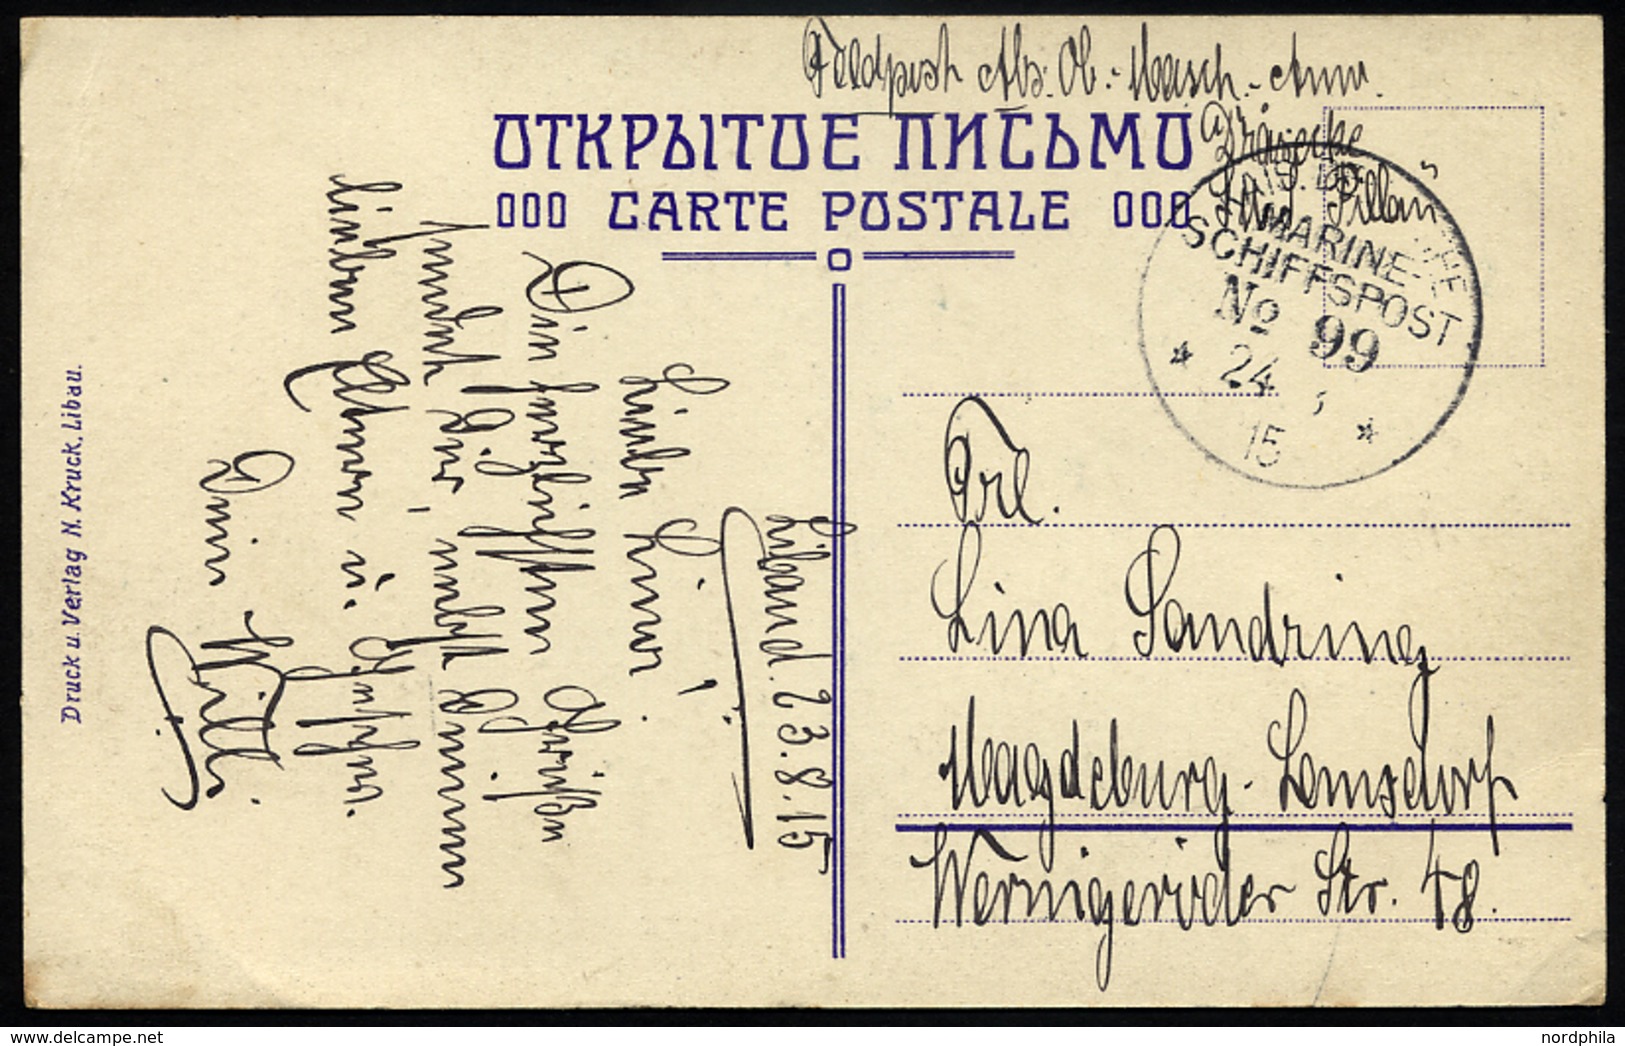 MSP VON 1914 - 1918 99 (Kleiner Kreuzer PILLAU), 24.8.1915, Feldpost-Ansichtskarte Von Bord Der Pillau, Pracht - Maritime